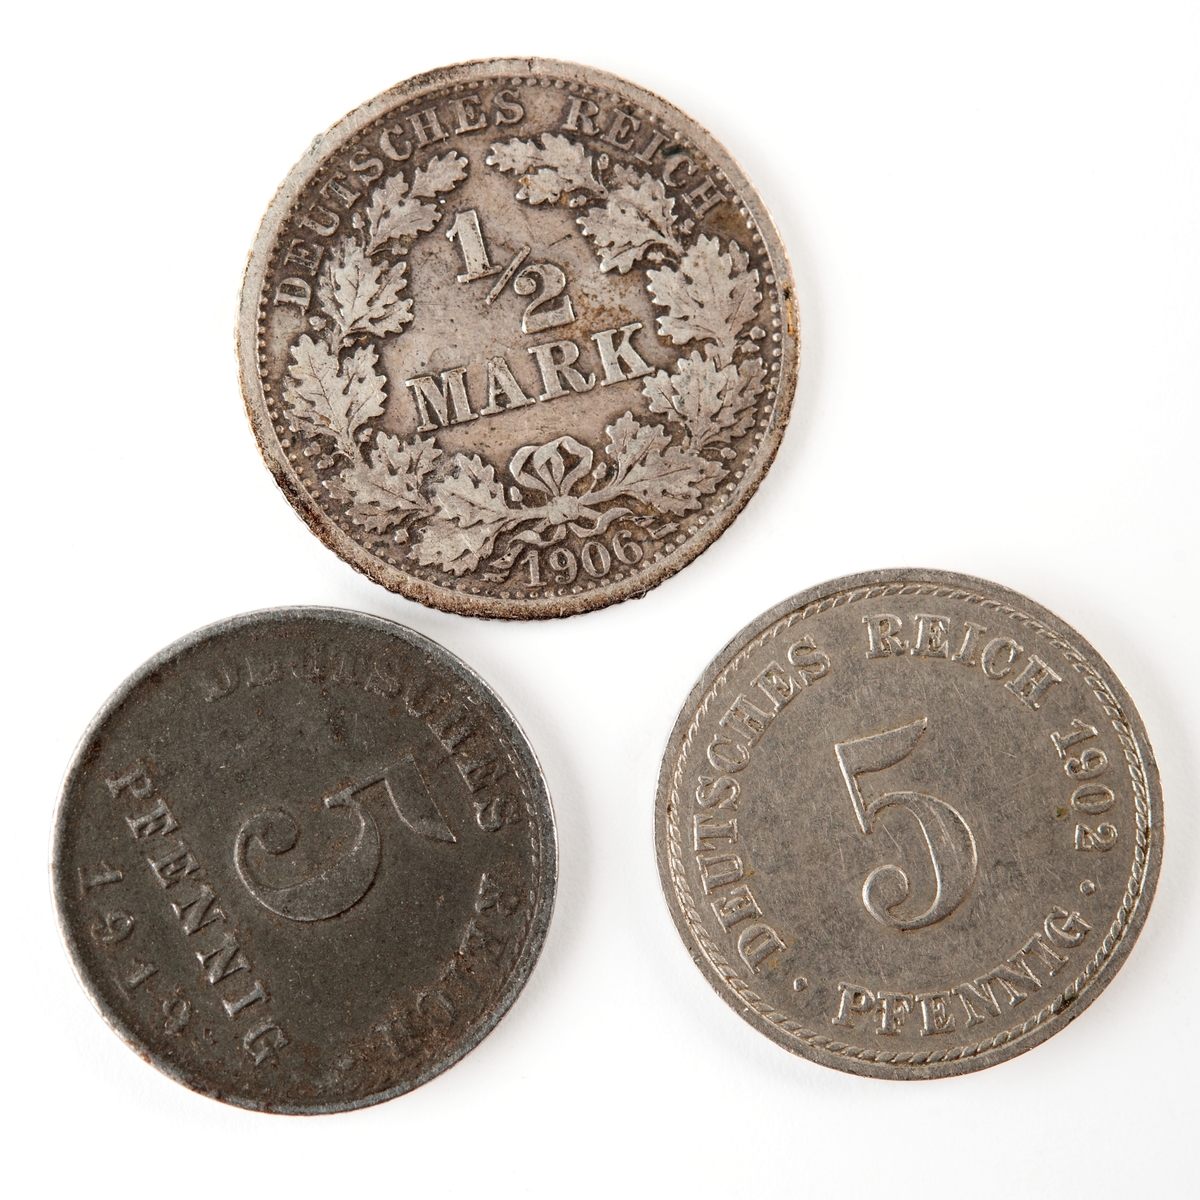 Tyskt silvermynt, 1/2 (halv) mark från 1906.